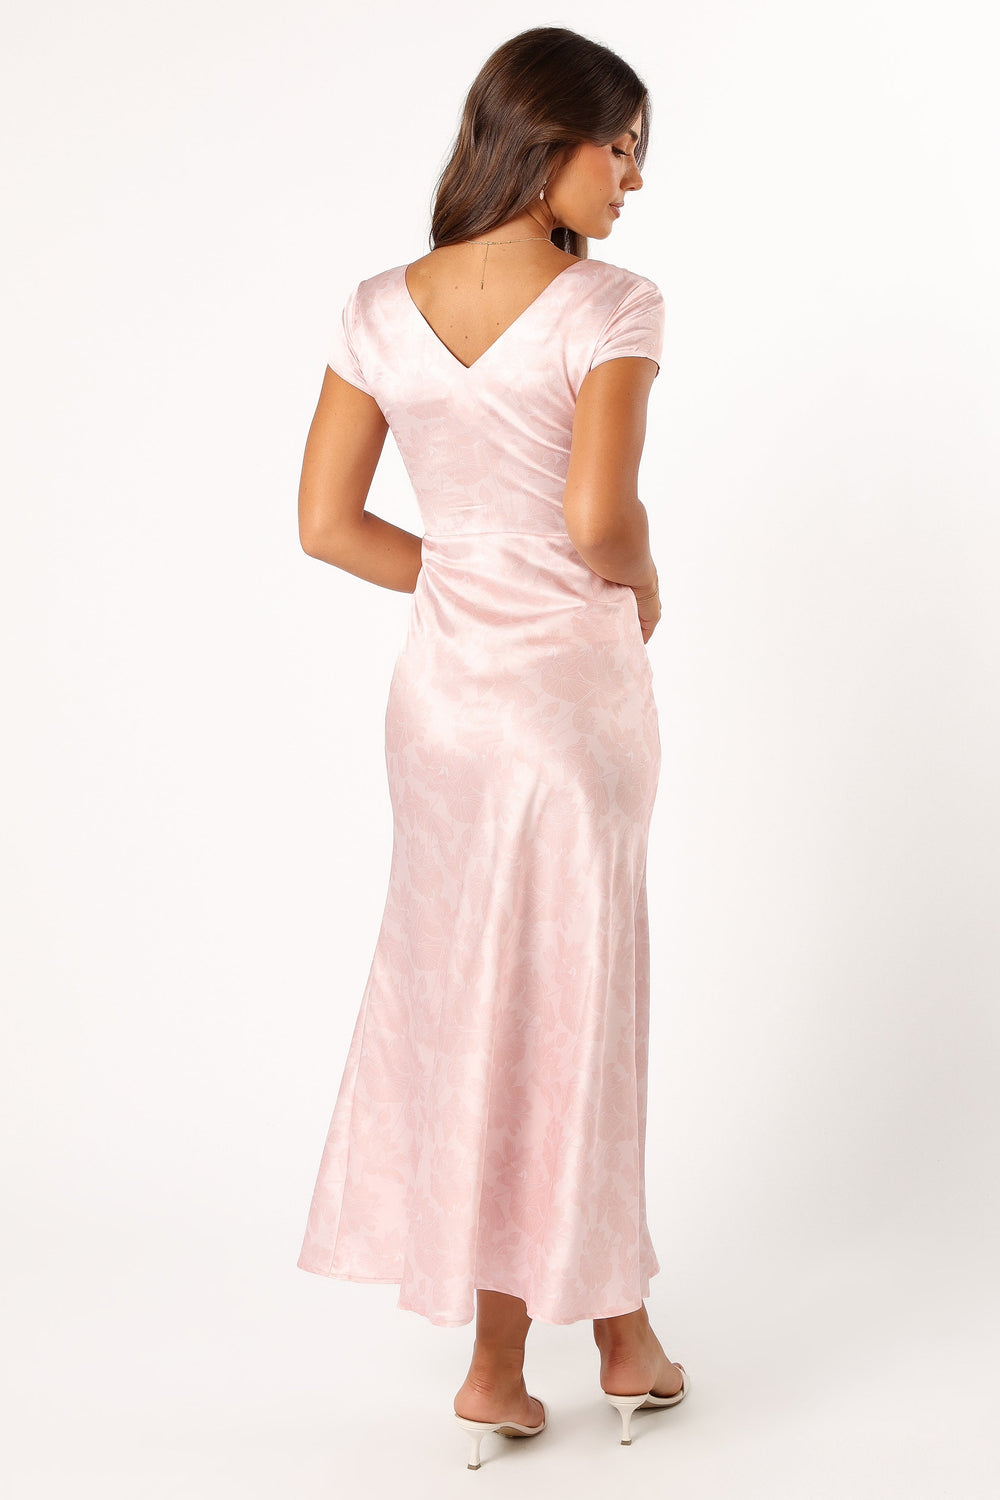 Petal and Pup USA DRESSES Benton Slip Maxi Dress - Pink Floral